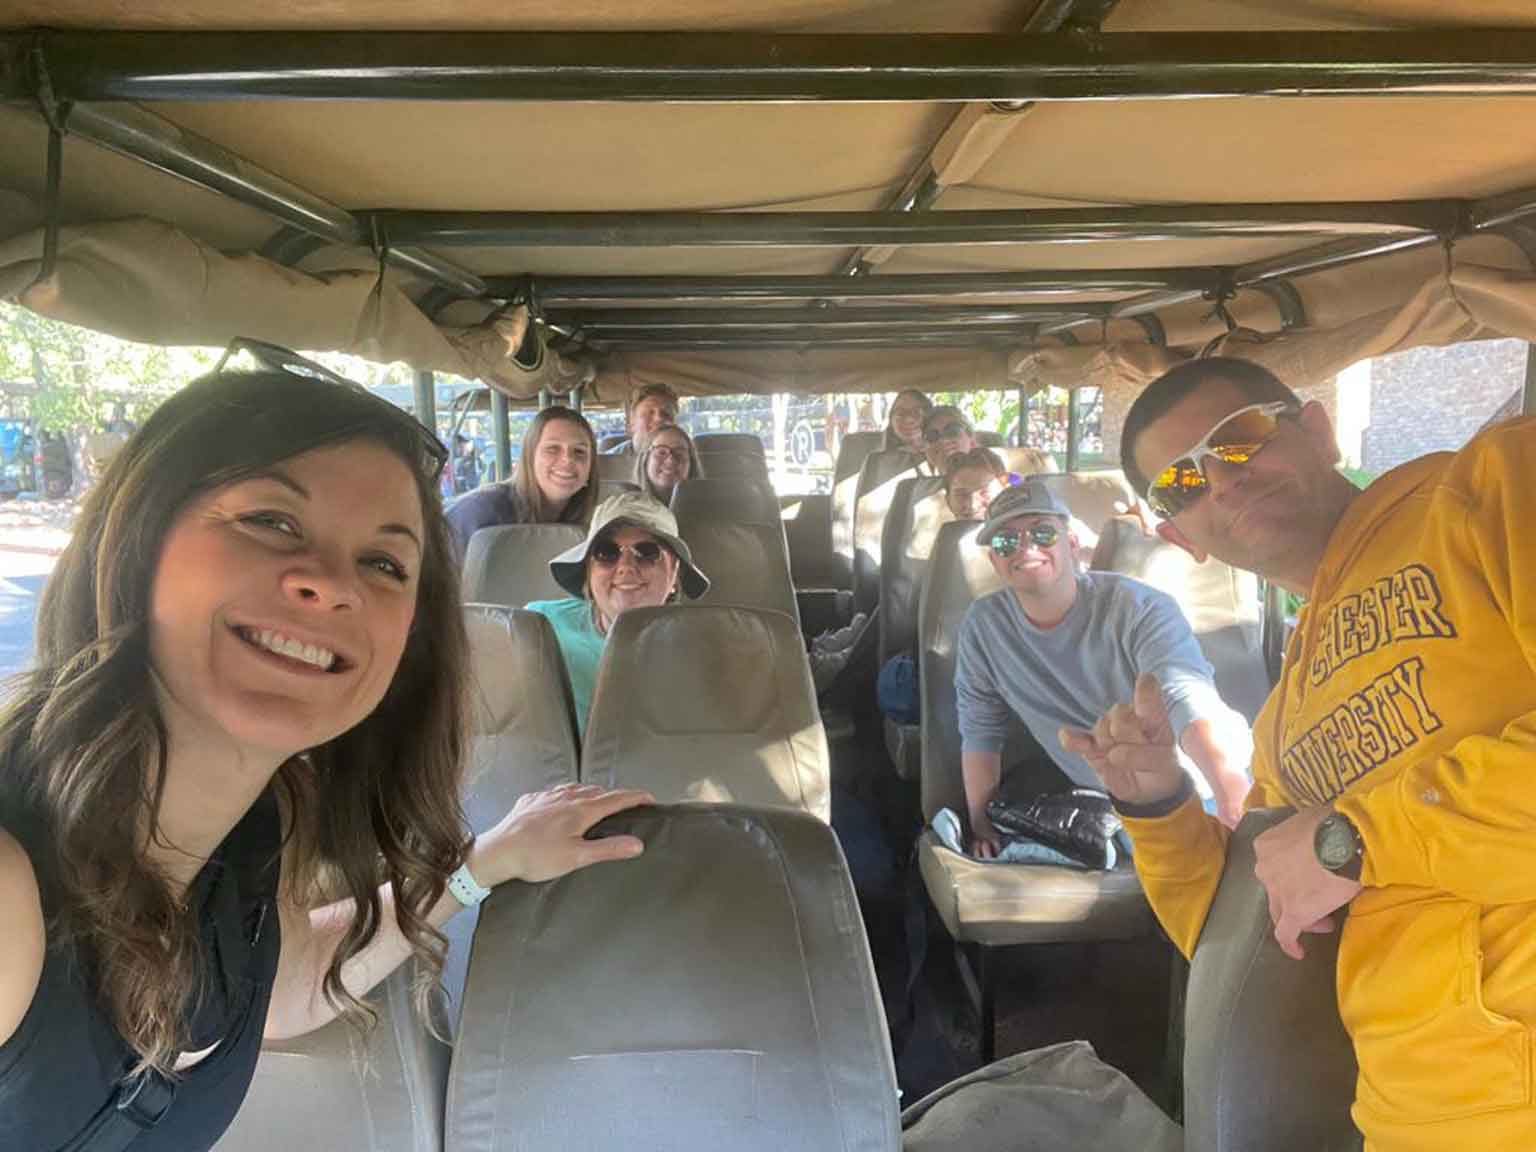 Group selfie in caravan